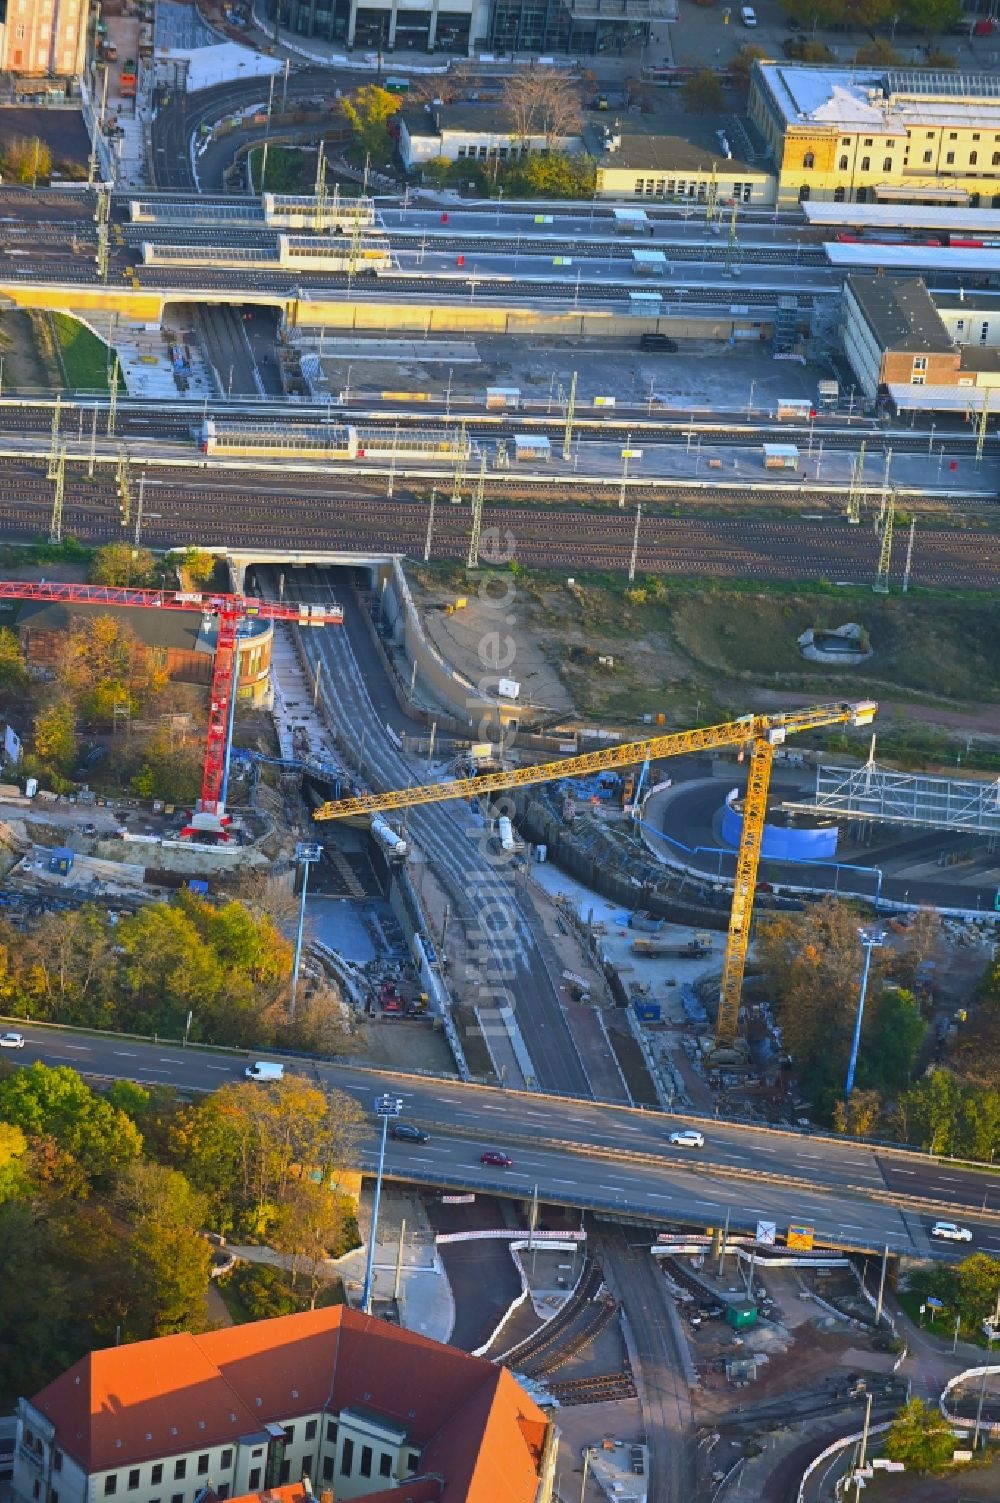 Magdeburg aus der Vogelperspektive: Baustelle zum Neubau des Citytunnels im Zuge der Bahnbrückensanierung der Deutschen Bahn in Magdeburg im Bundesland Sachsen-Anhalt